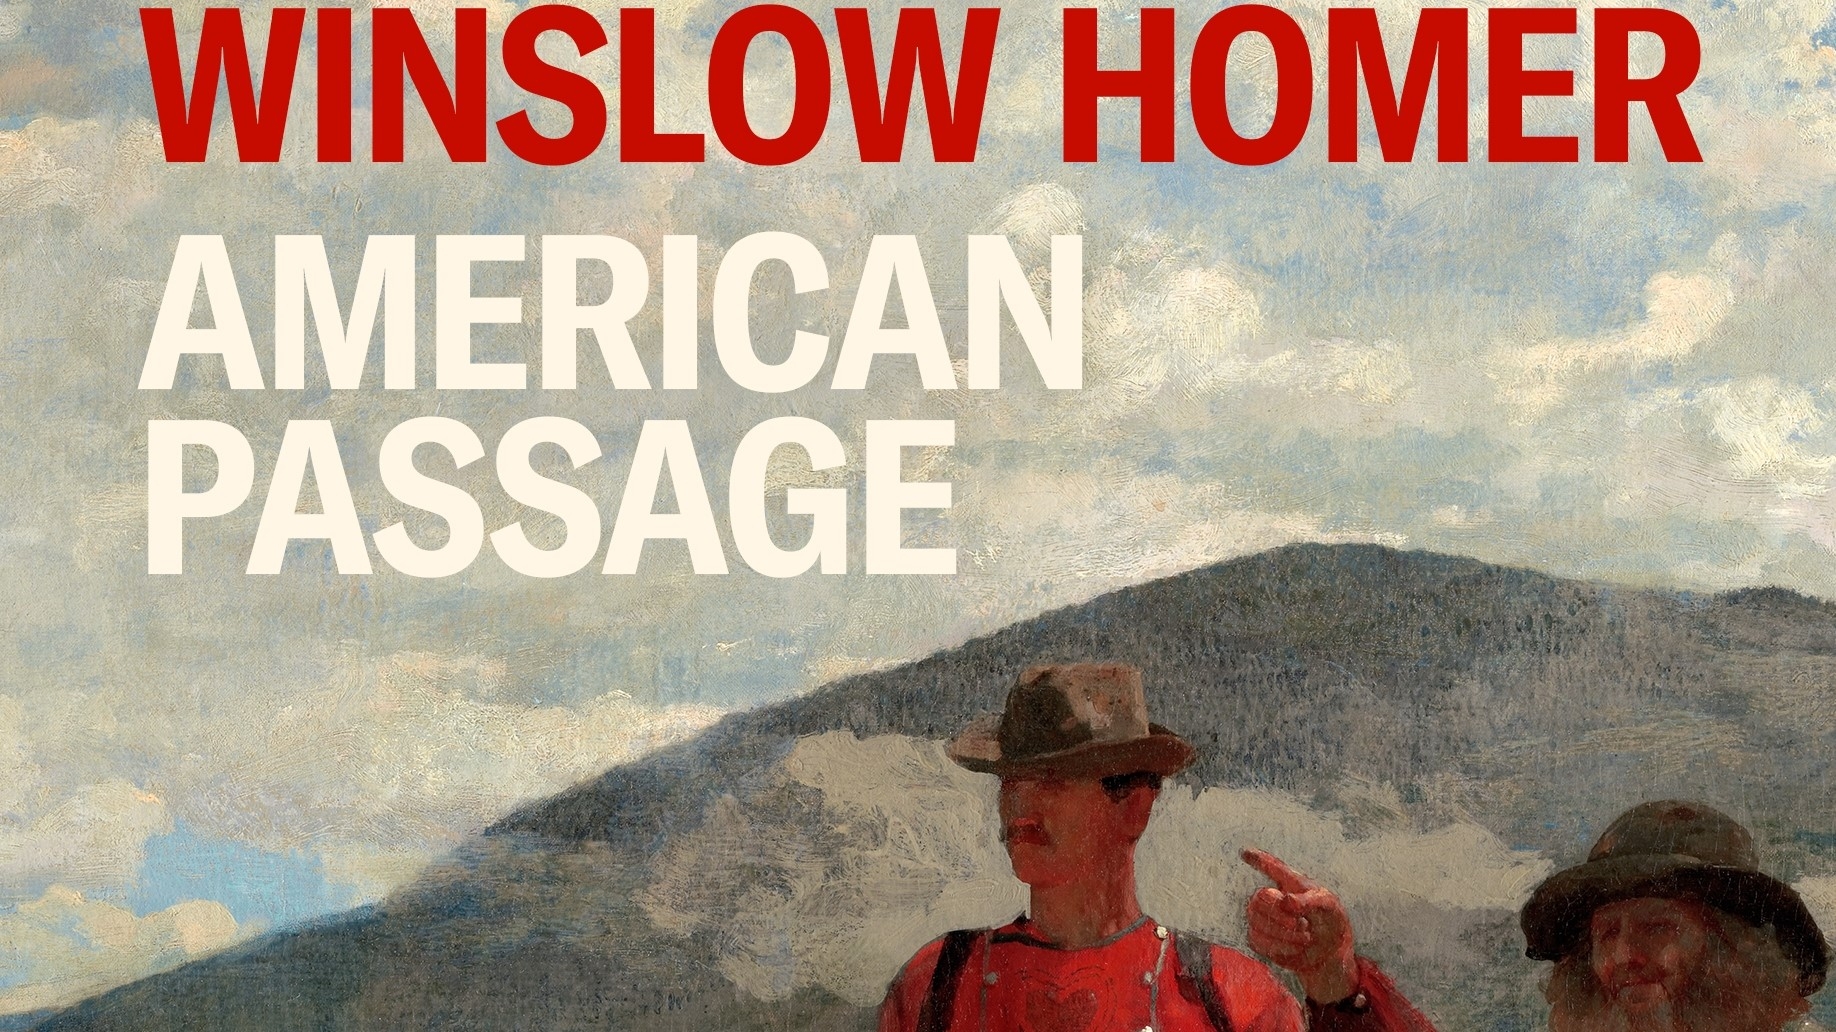 Image recadrée de la jaquette du livre de Winslow Homer's "American Passage".